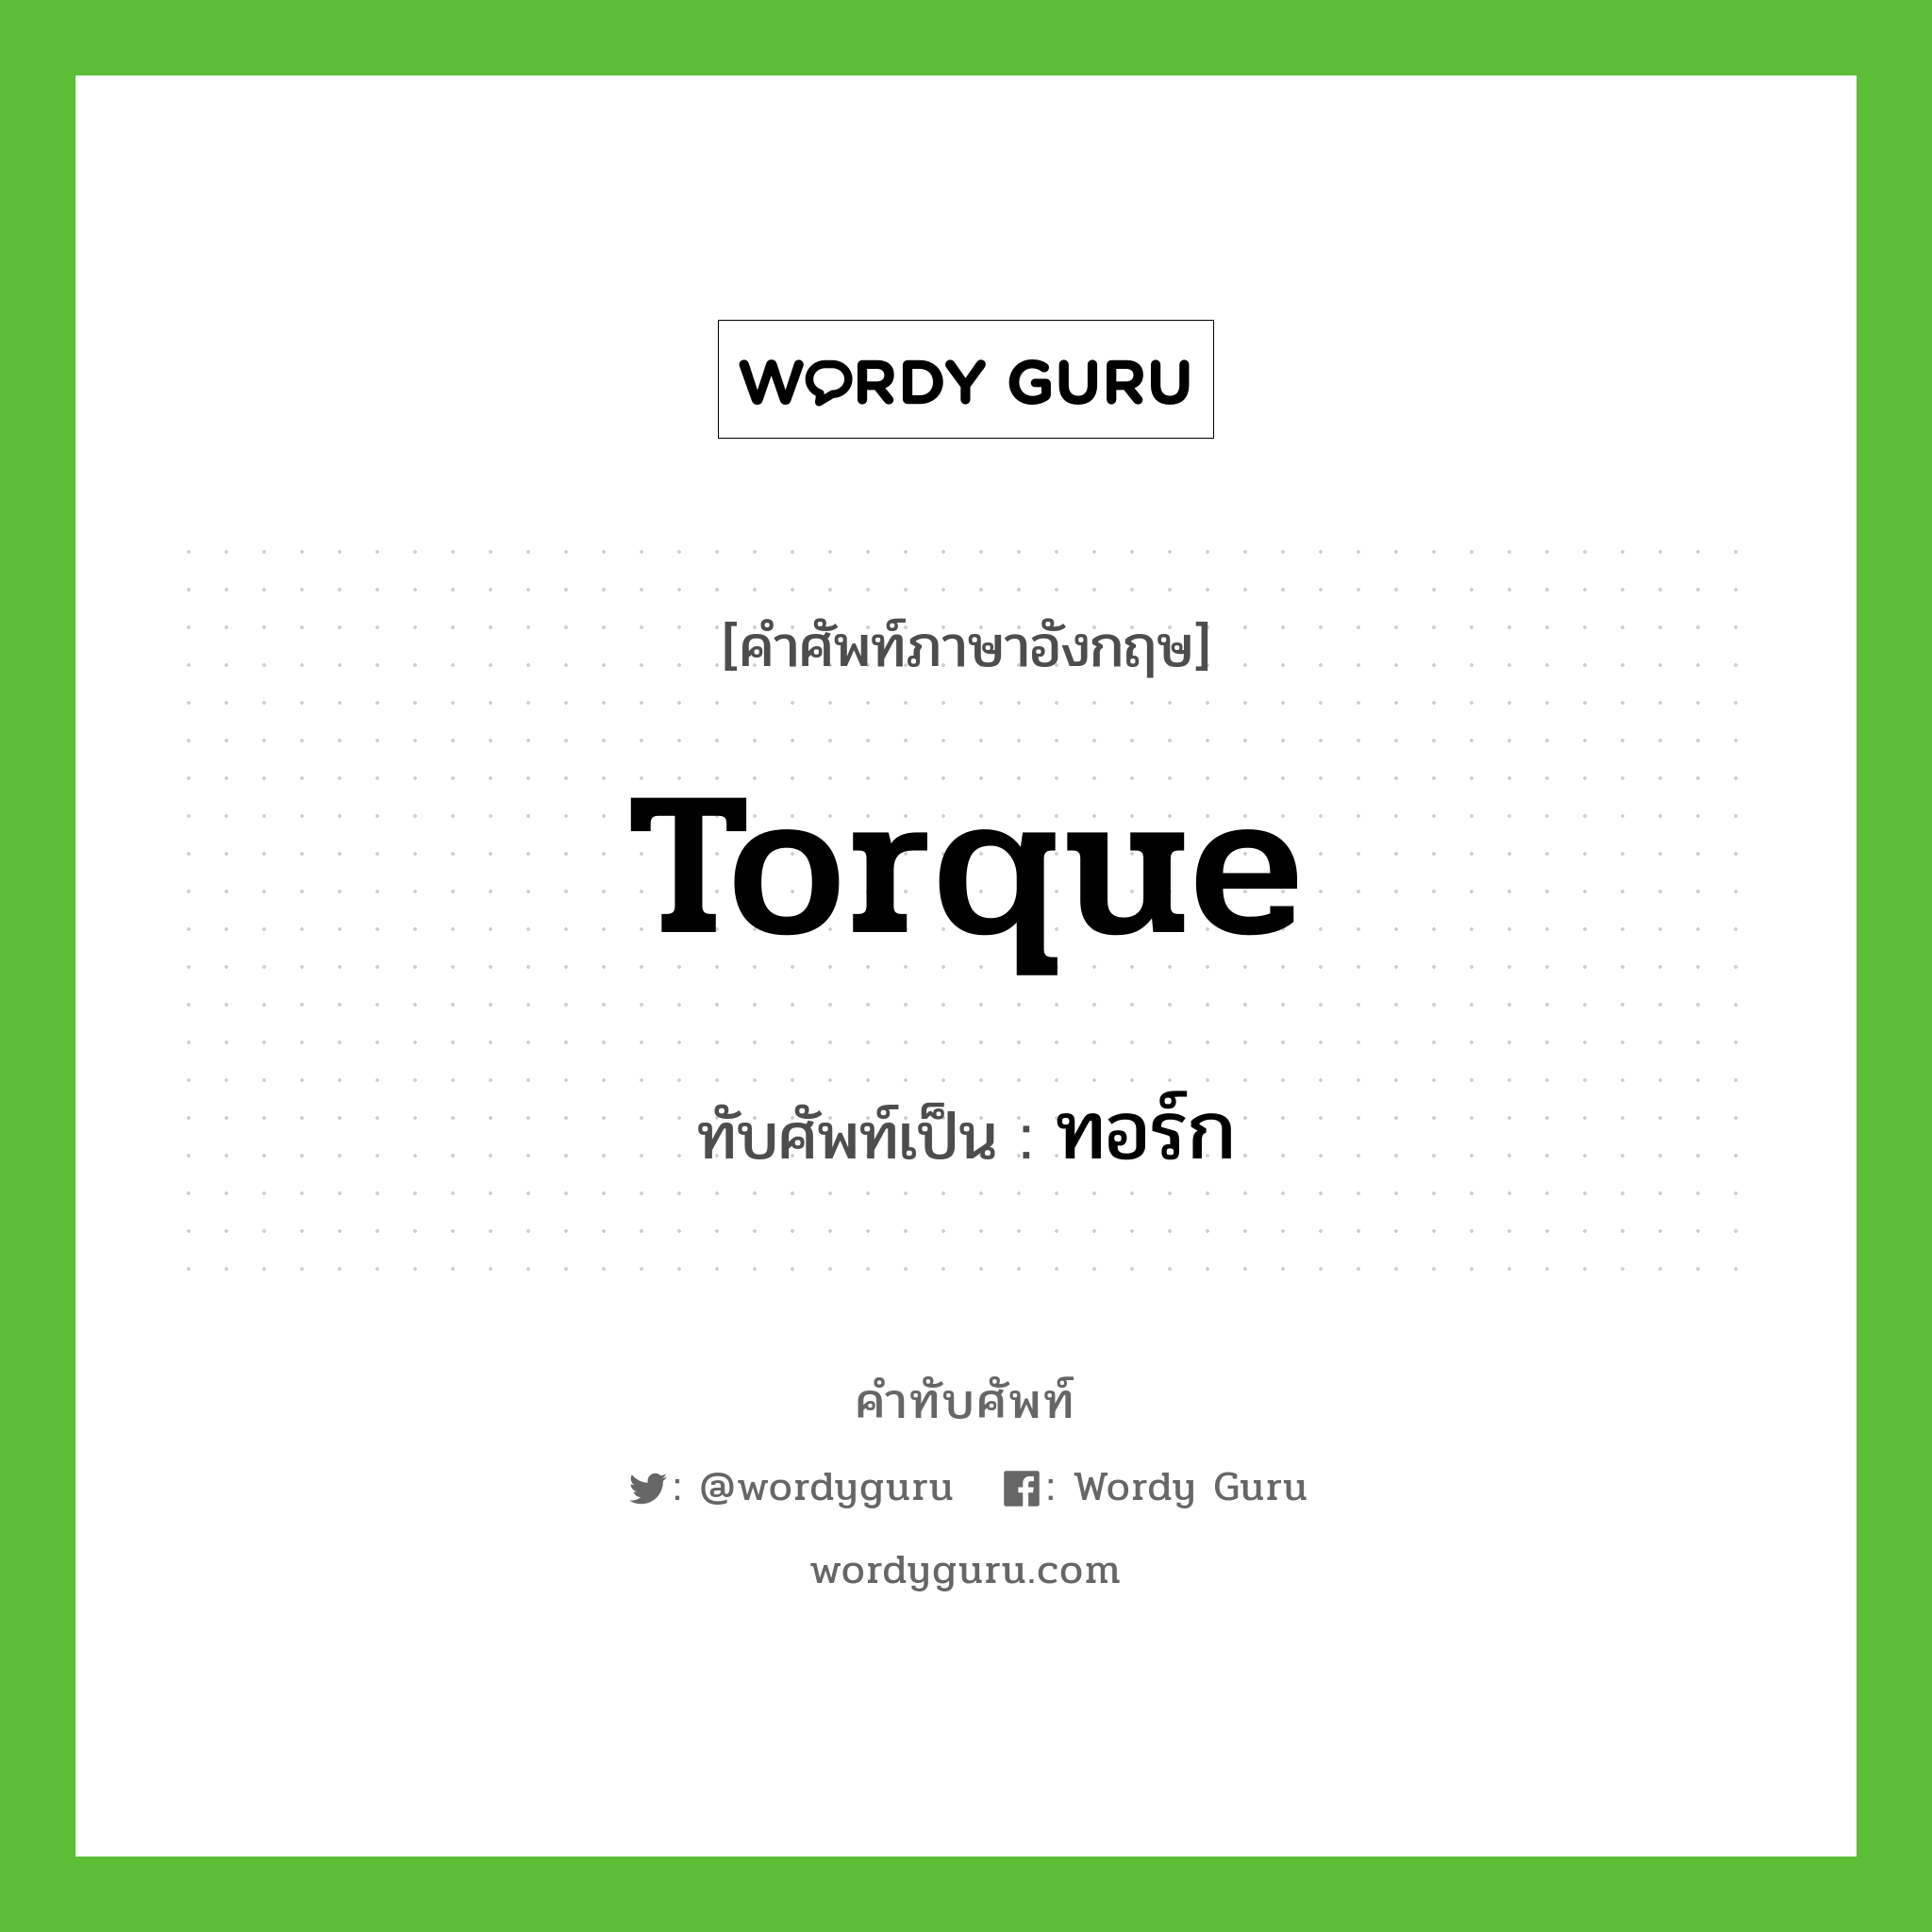 torque เขียนเป็นคำไทยว่าอะไร?, คำศัพท์ภาษาอังกฤษ torque ทับศัพท์เป็น ทอร์ก